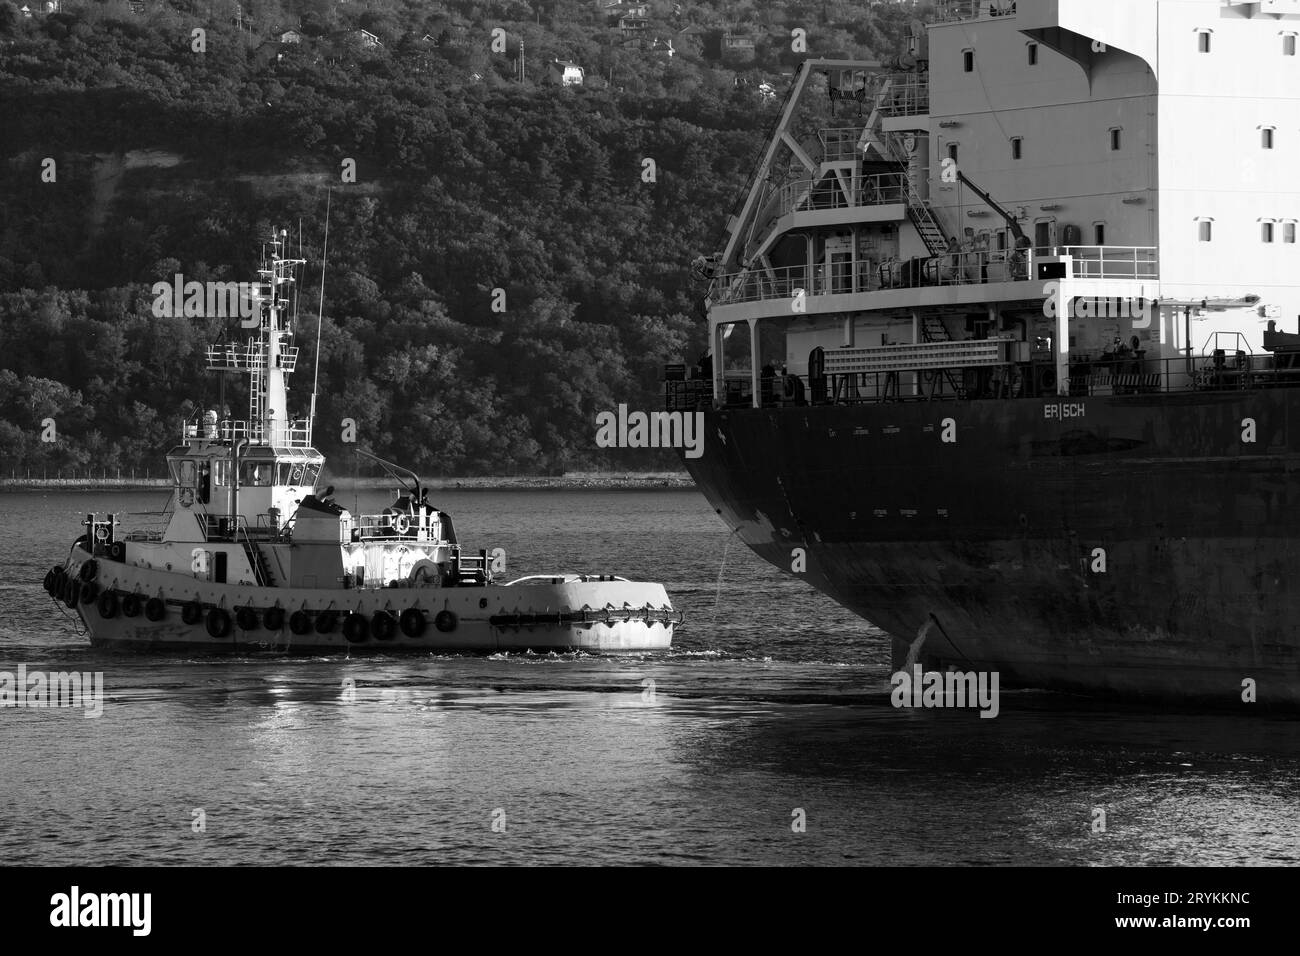 Remorqueur est près d'un cargo. Mer Noire, port de Varna, Bulgarie. Photo noir et blanc Banque D'Images